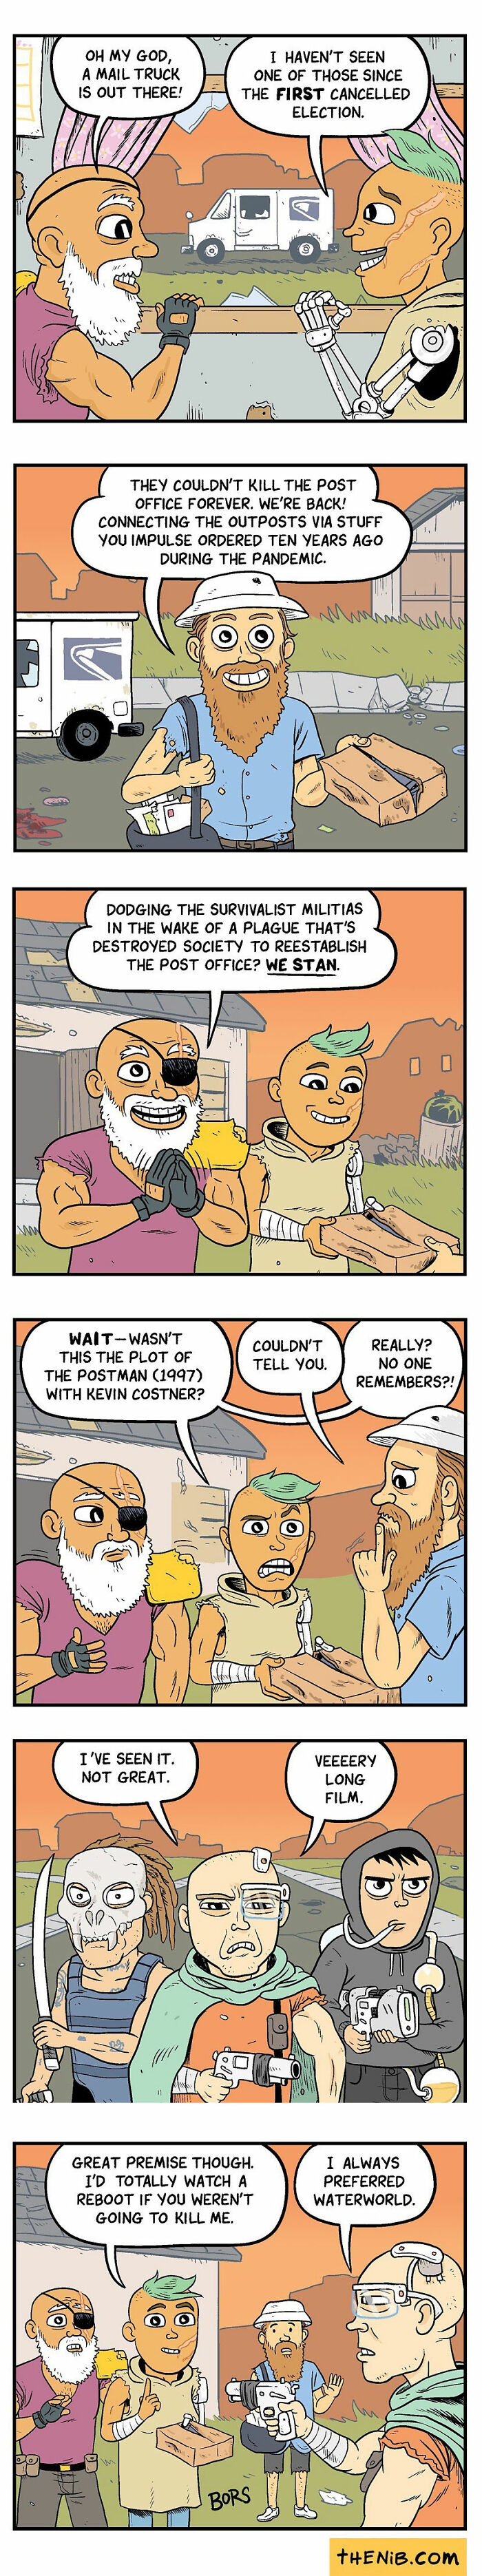 Comics-Matt-Bors